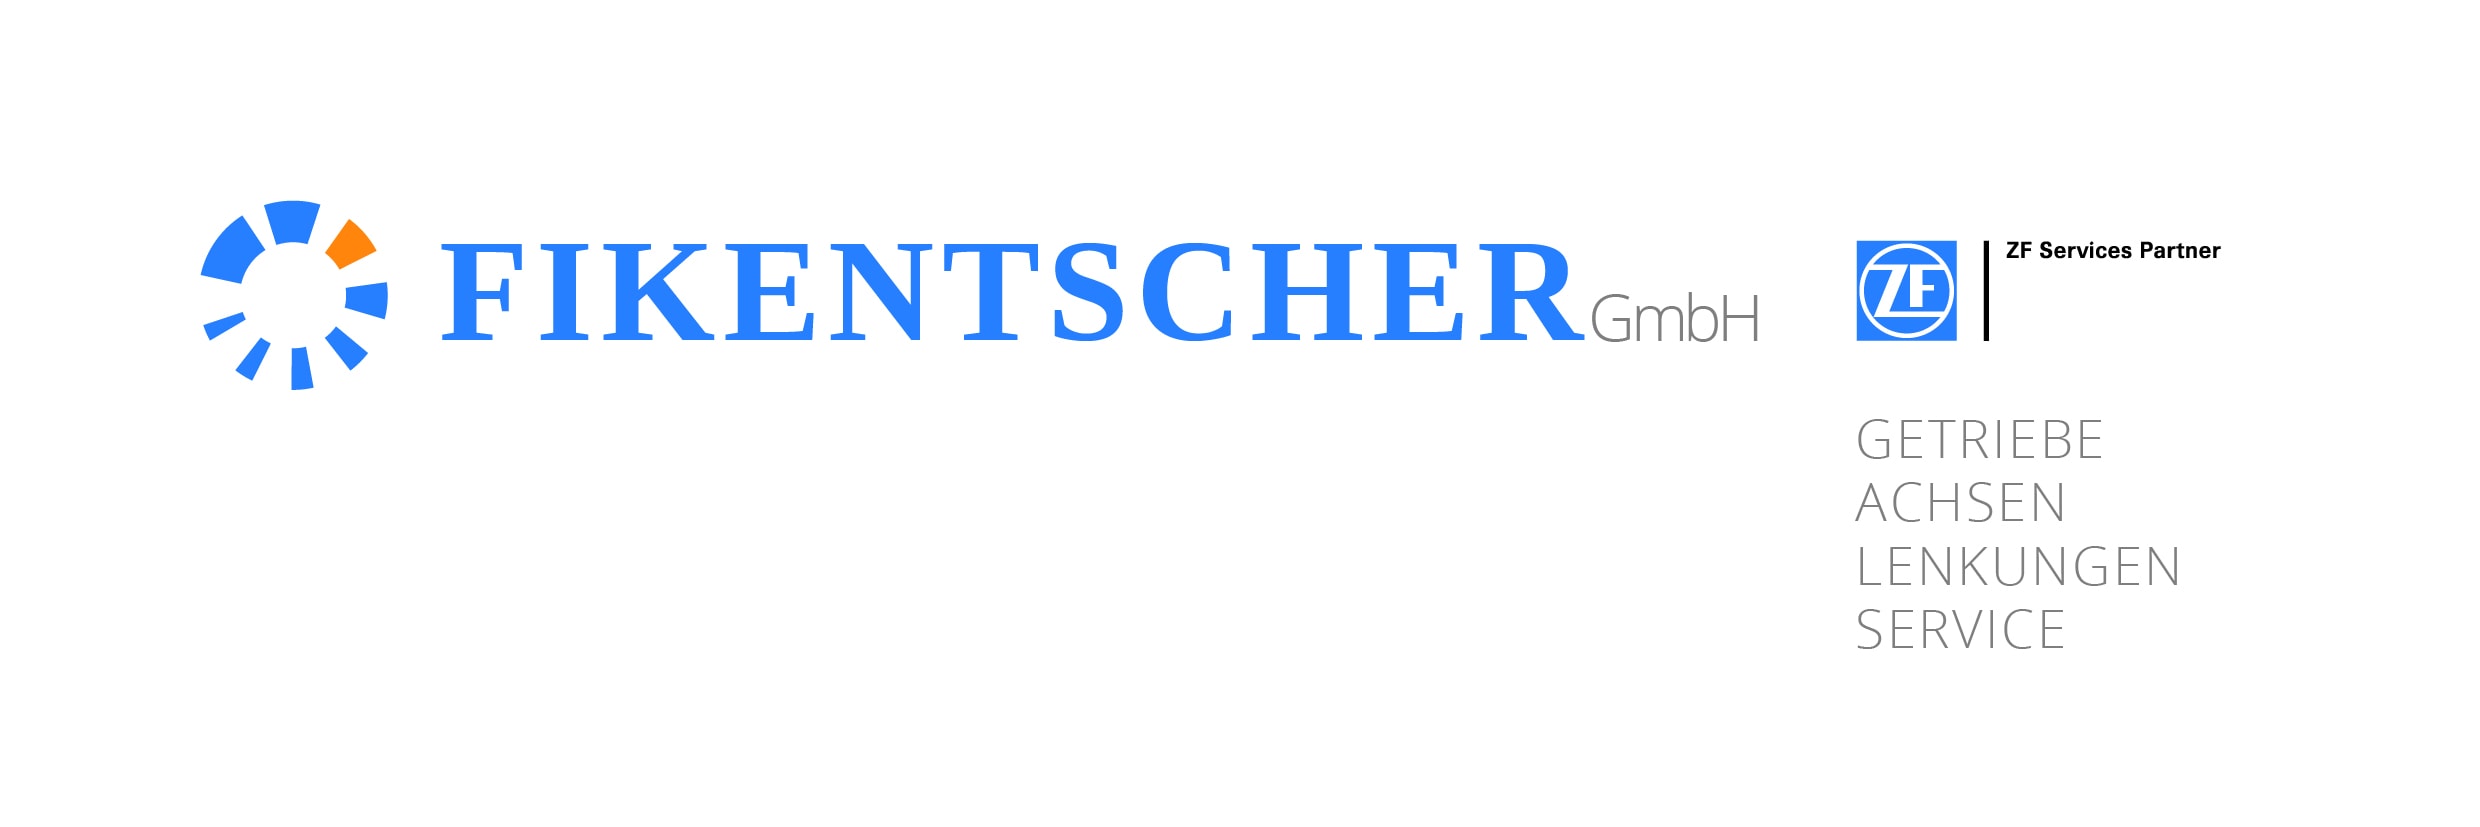 20170109_Fikentscher_Logo_final-01